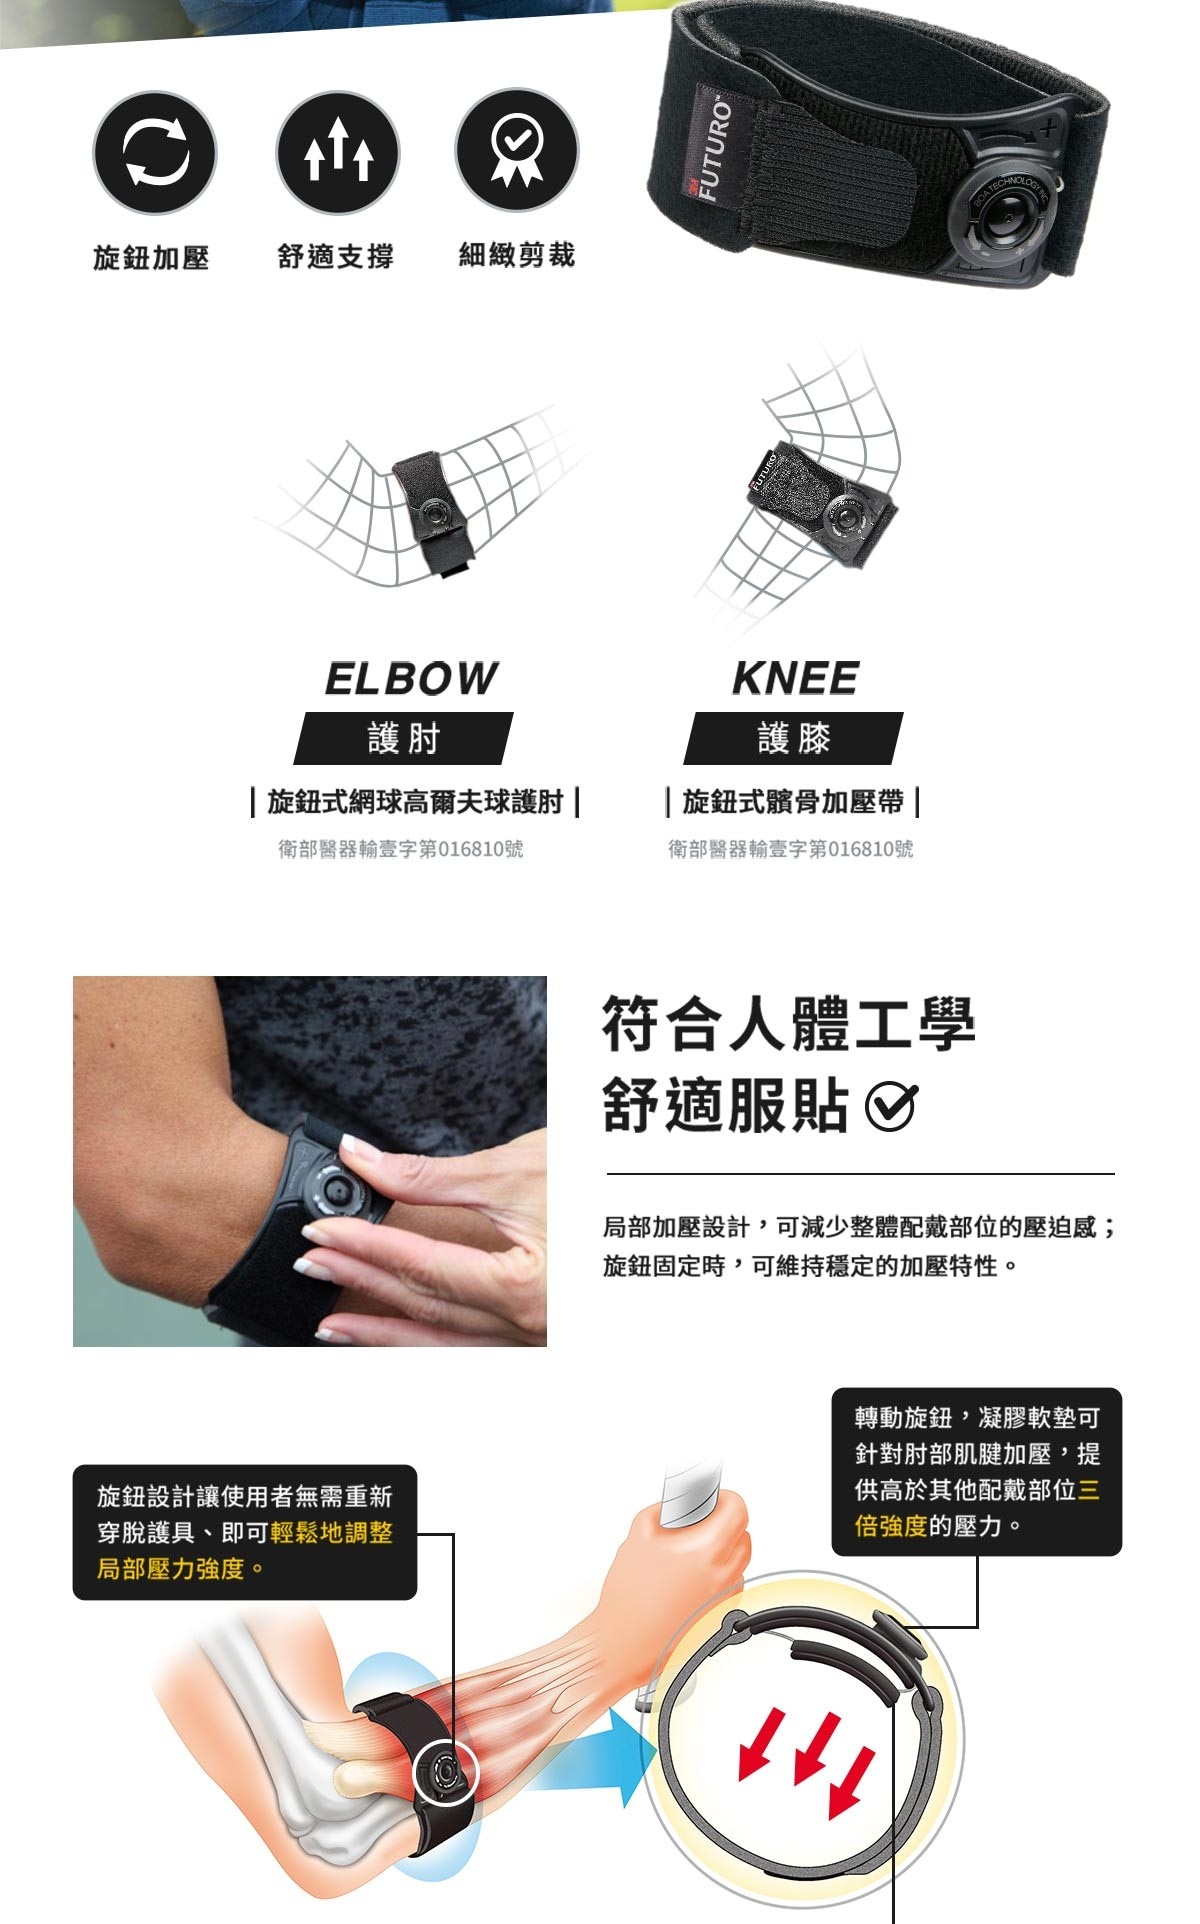 3M 護多樂 旋鈕式網球高爾夫球護肘，旋鈕設計可針對前臂酸痛位置調整局部壓力強度，強度支撐，透氣舒適。